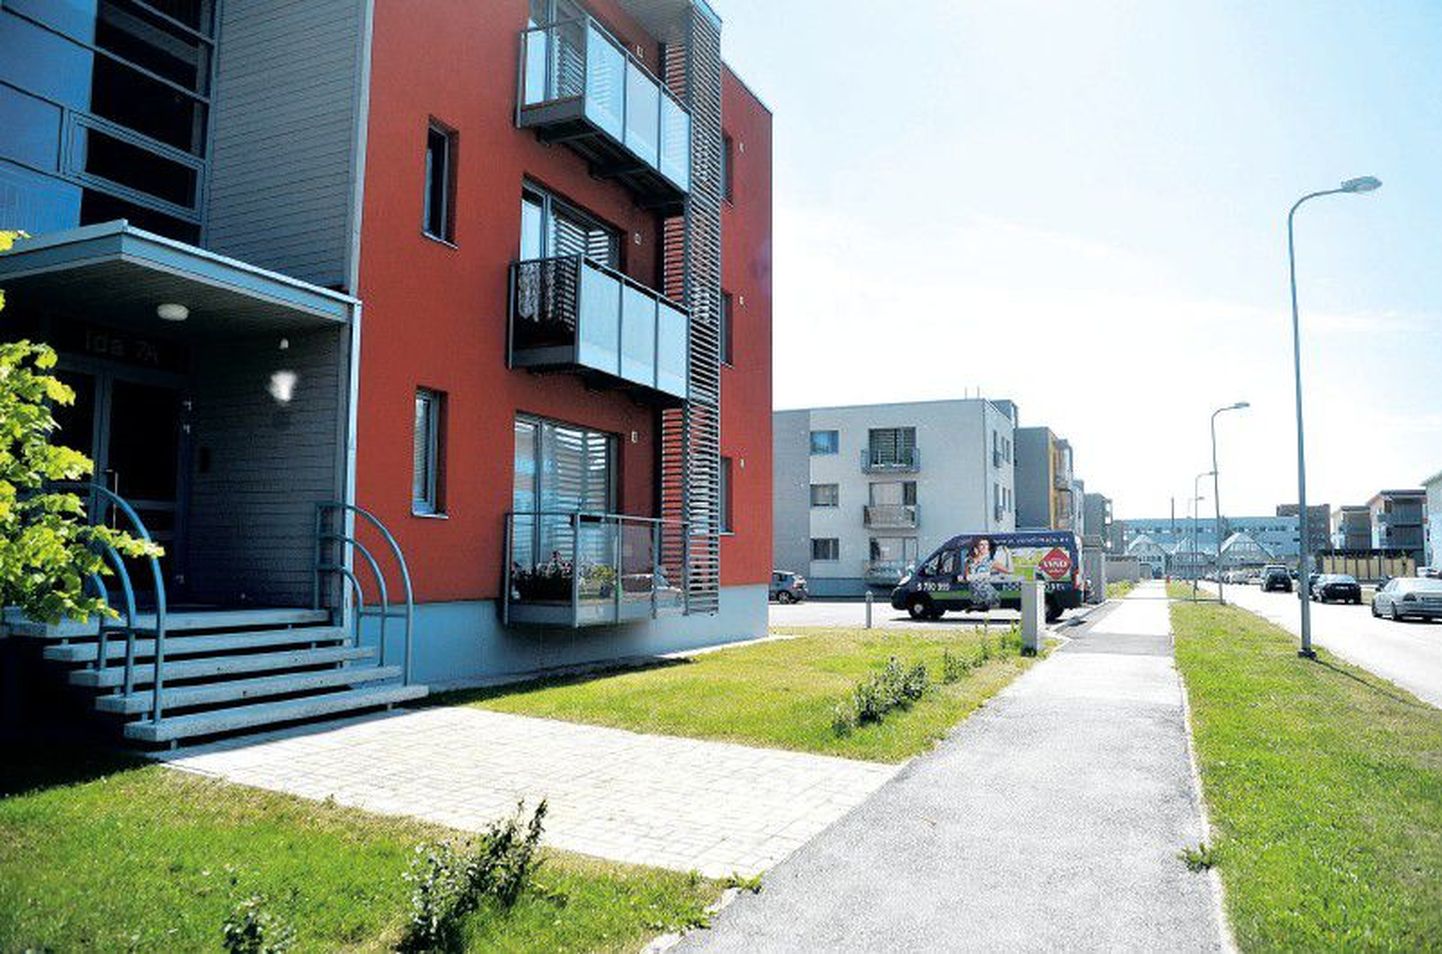 Kalleim korter müüdi augustis Tallinnas 460 000 euroga. Pilt on illustratiivne.